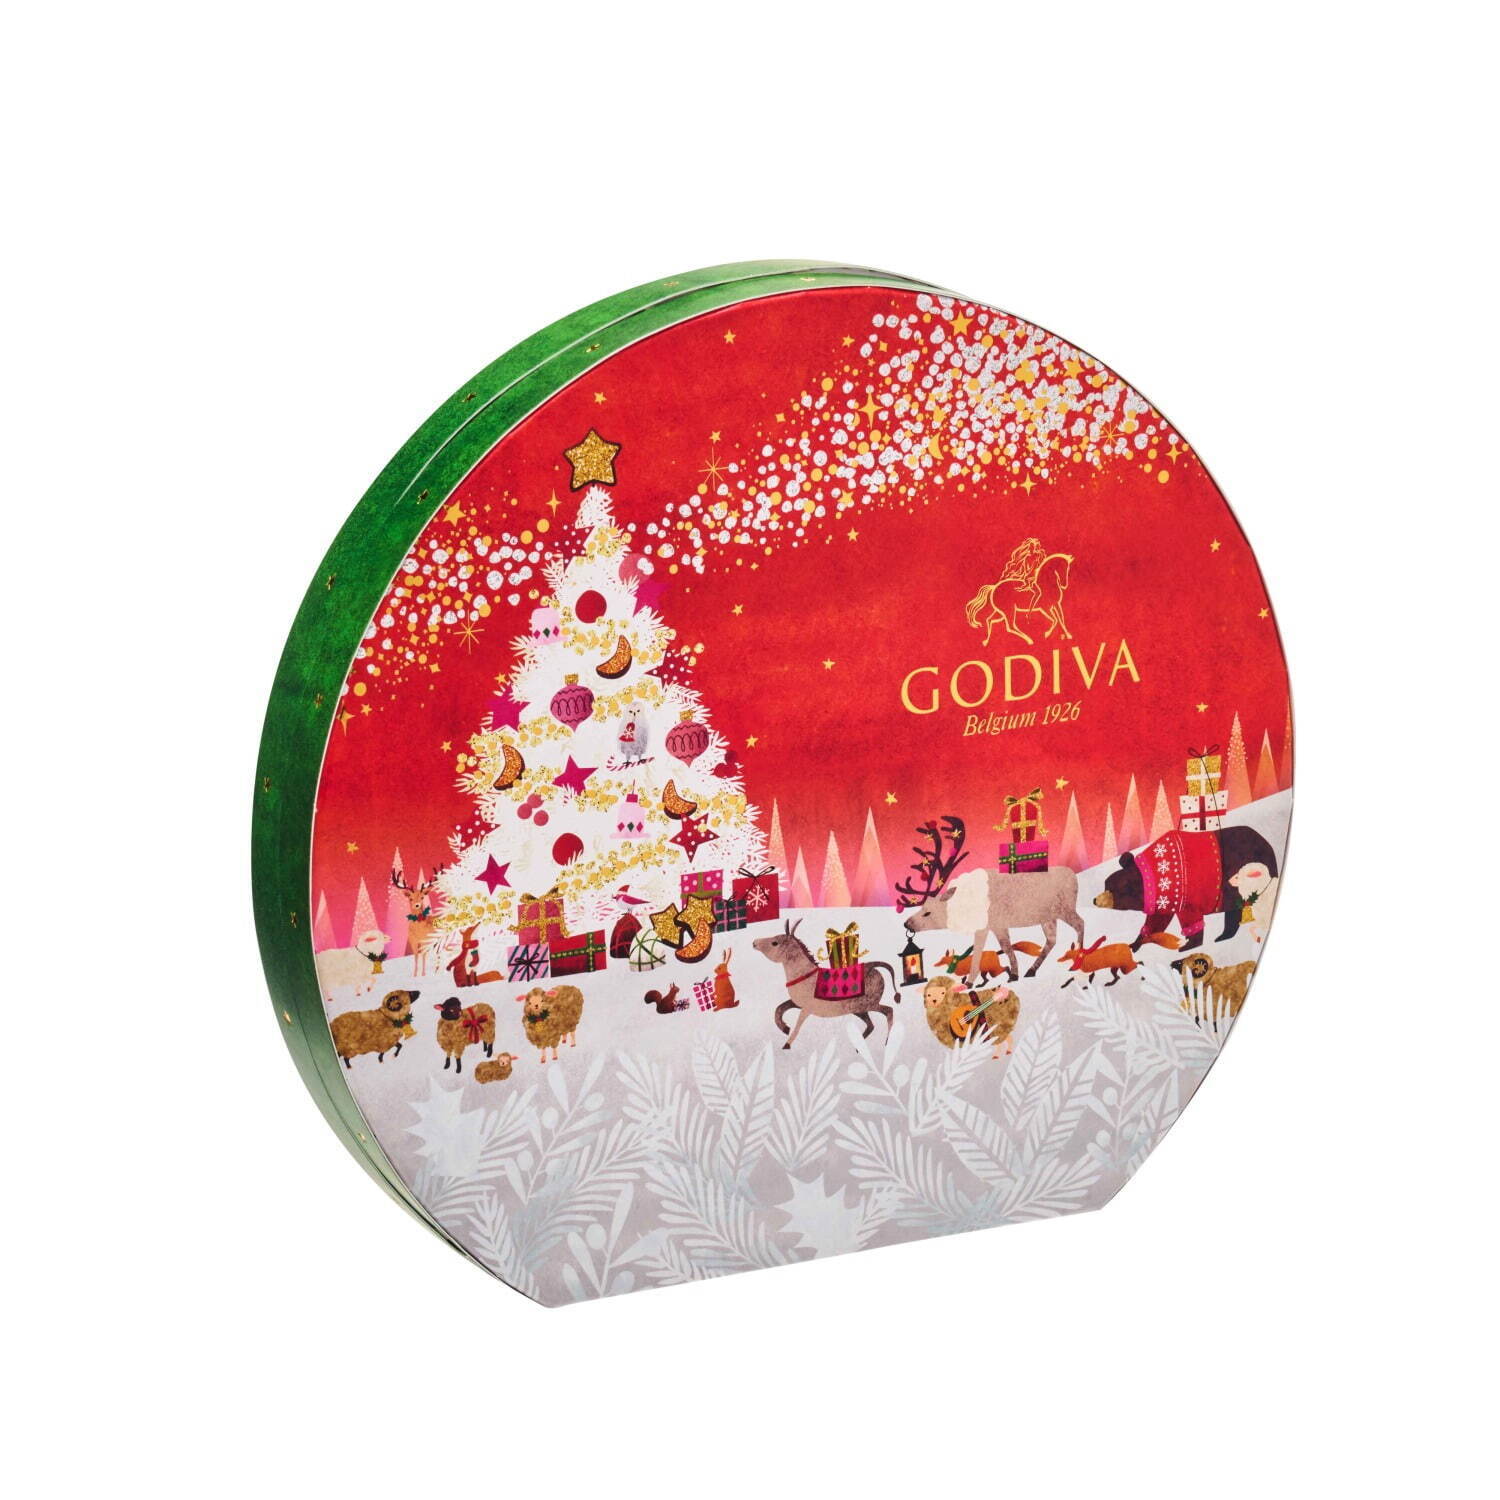 ゴディバ「星降る森のクリスマス」テーマの限定チョコレート、アソート